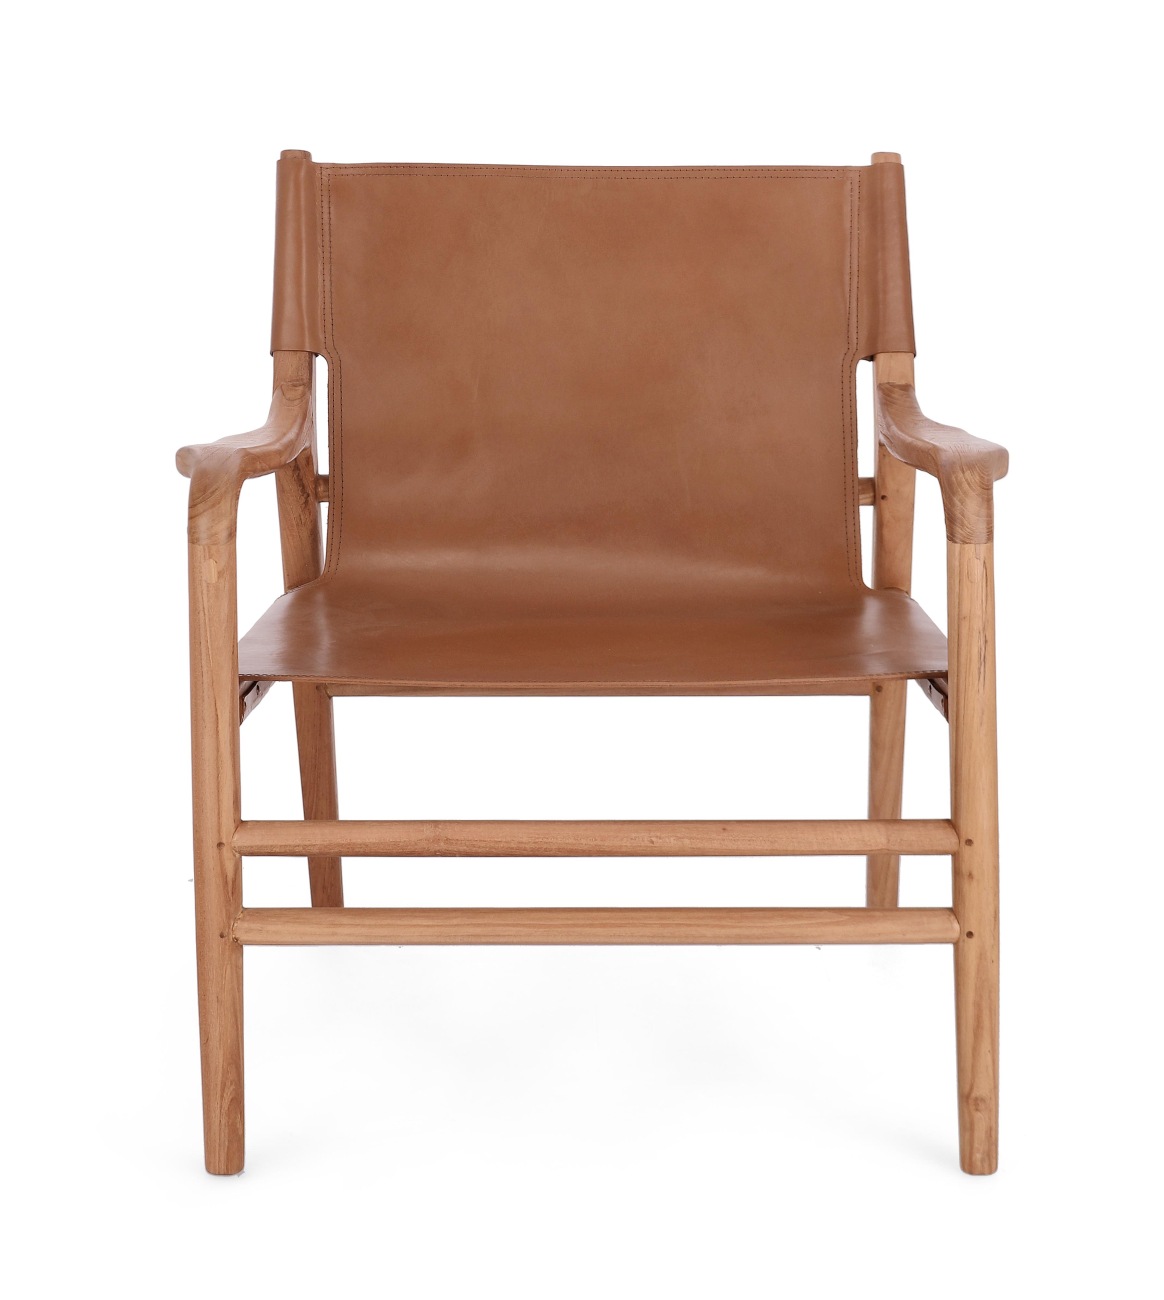 Der Sessel Caroline überzeugt mit seinem modernen Stil. Gefertigt wurde er aus Leder, welches einen Cognac Farbton besitzt. Das Gestell ist aus Teakholz und hat eine natürliche Farbe. Der Sessel besitzt eine Sitzhöhe von 57 cm.